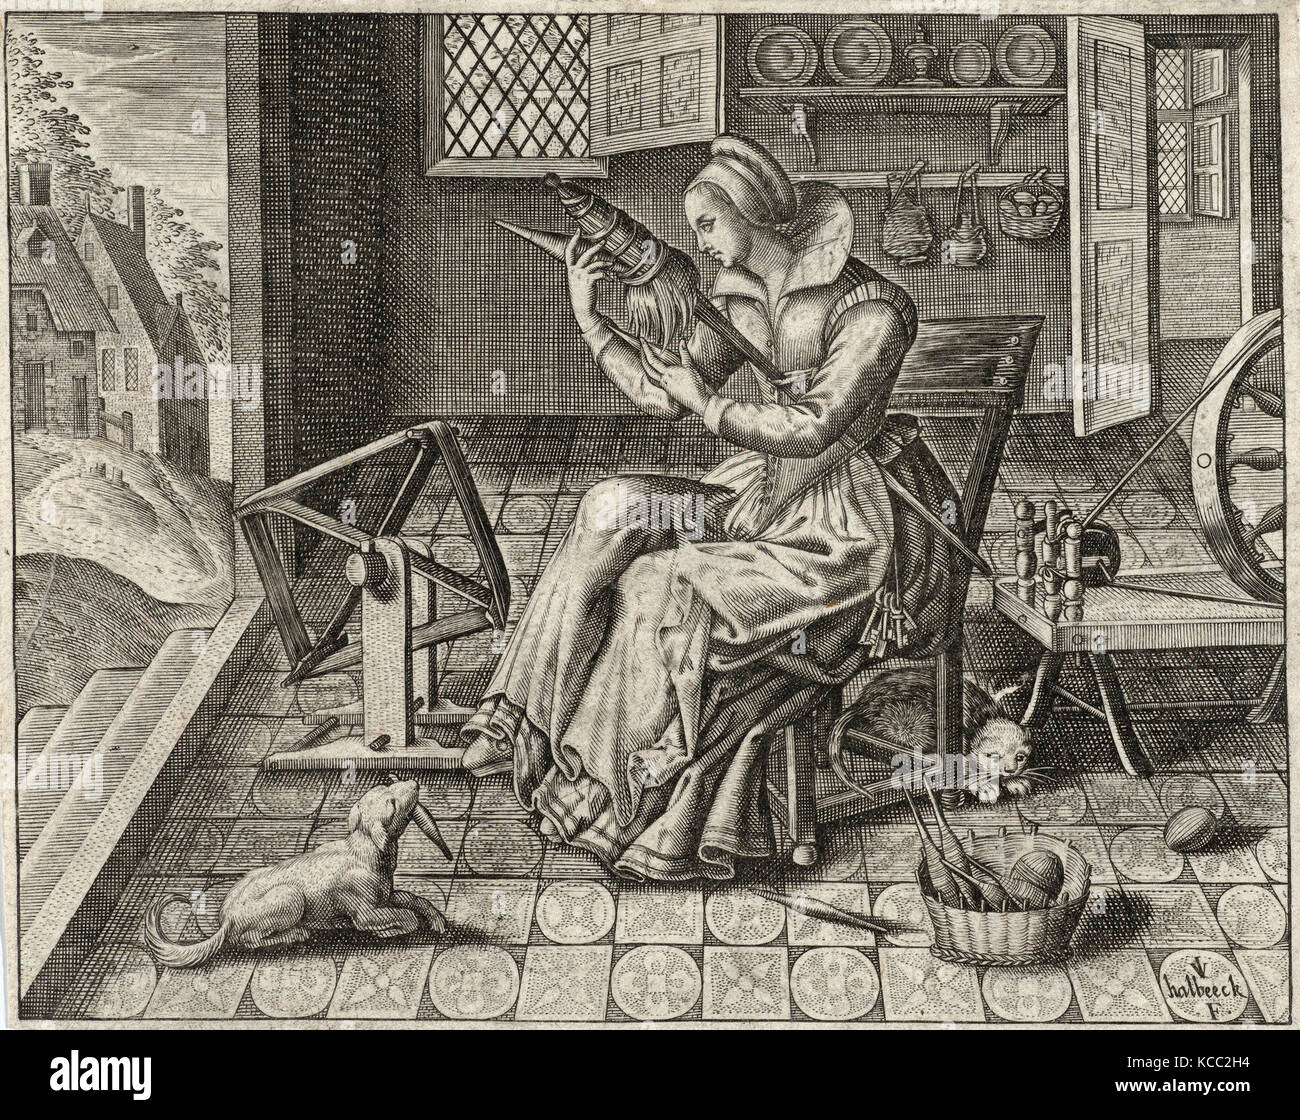 Enigmes Joyeuses pour les Bons Esprits, Jan van Haelbeeck, ca. 1615 Stock Photo